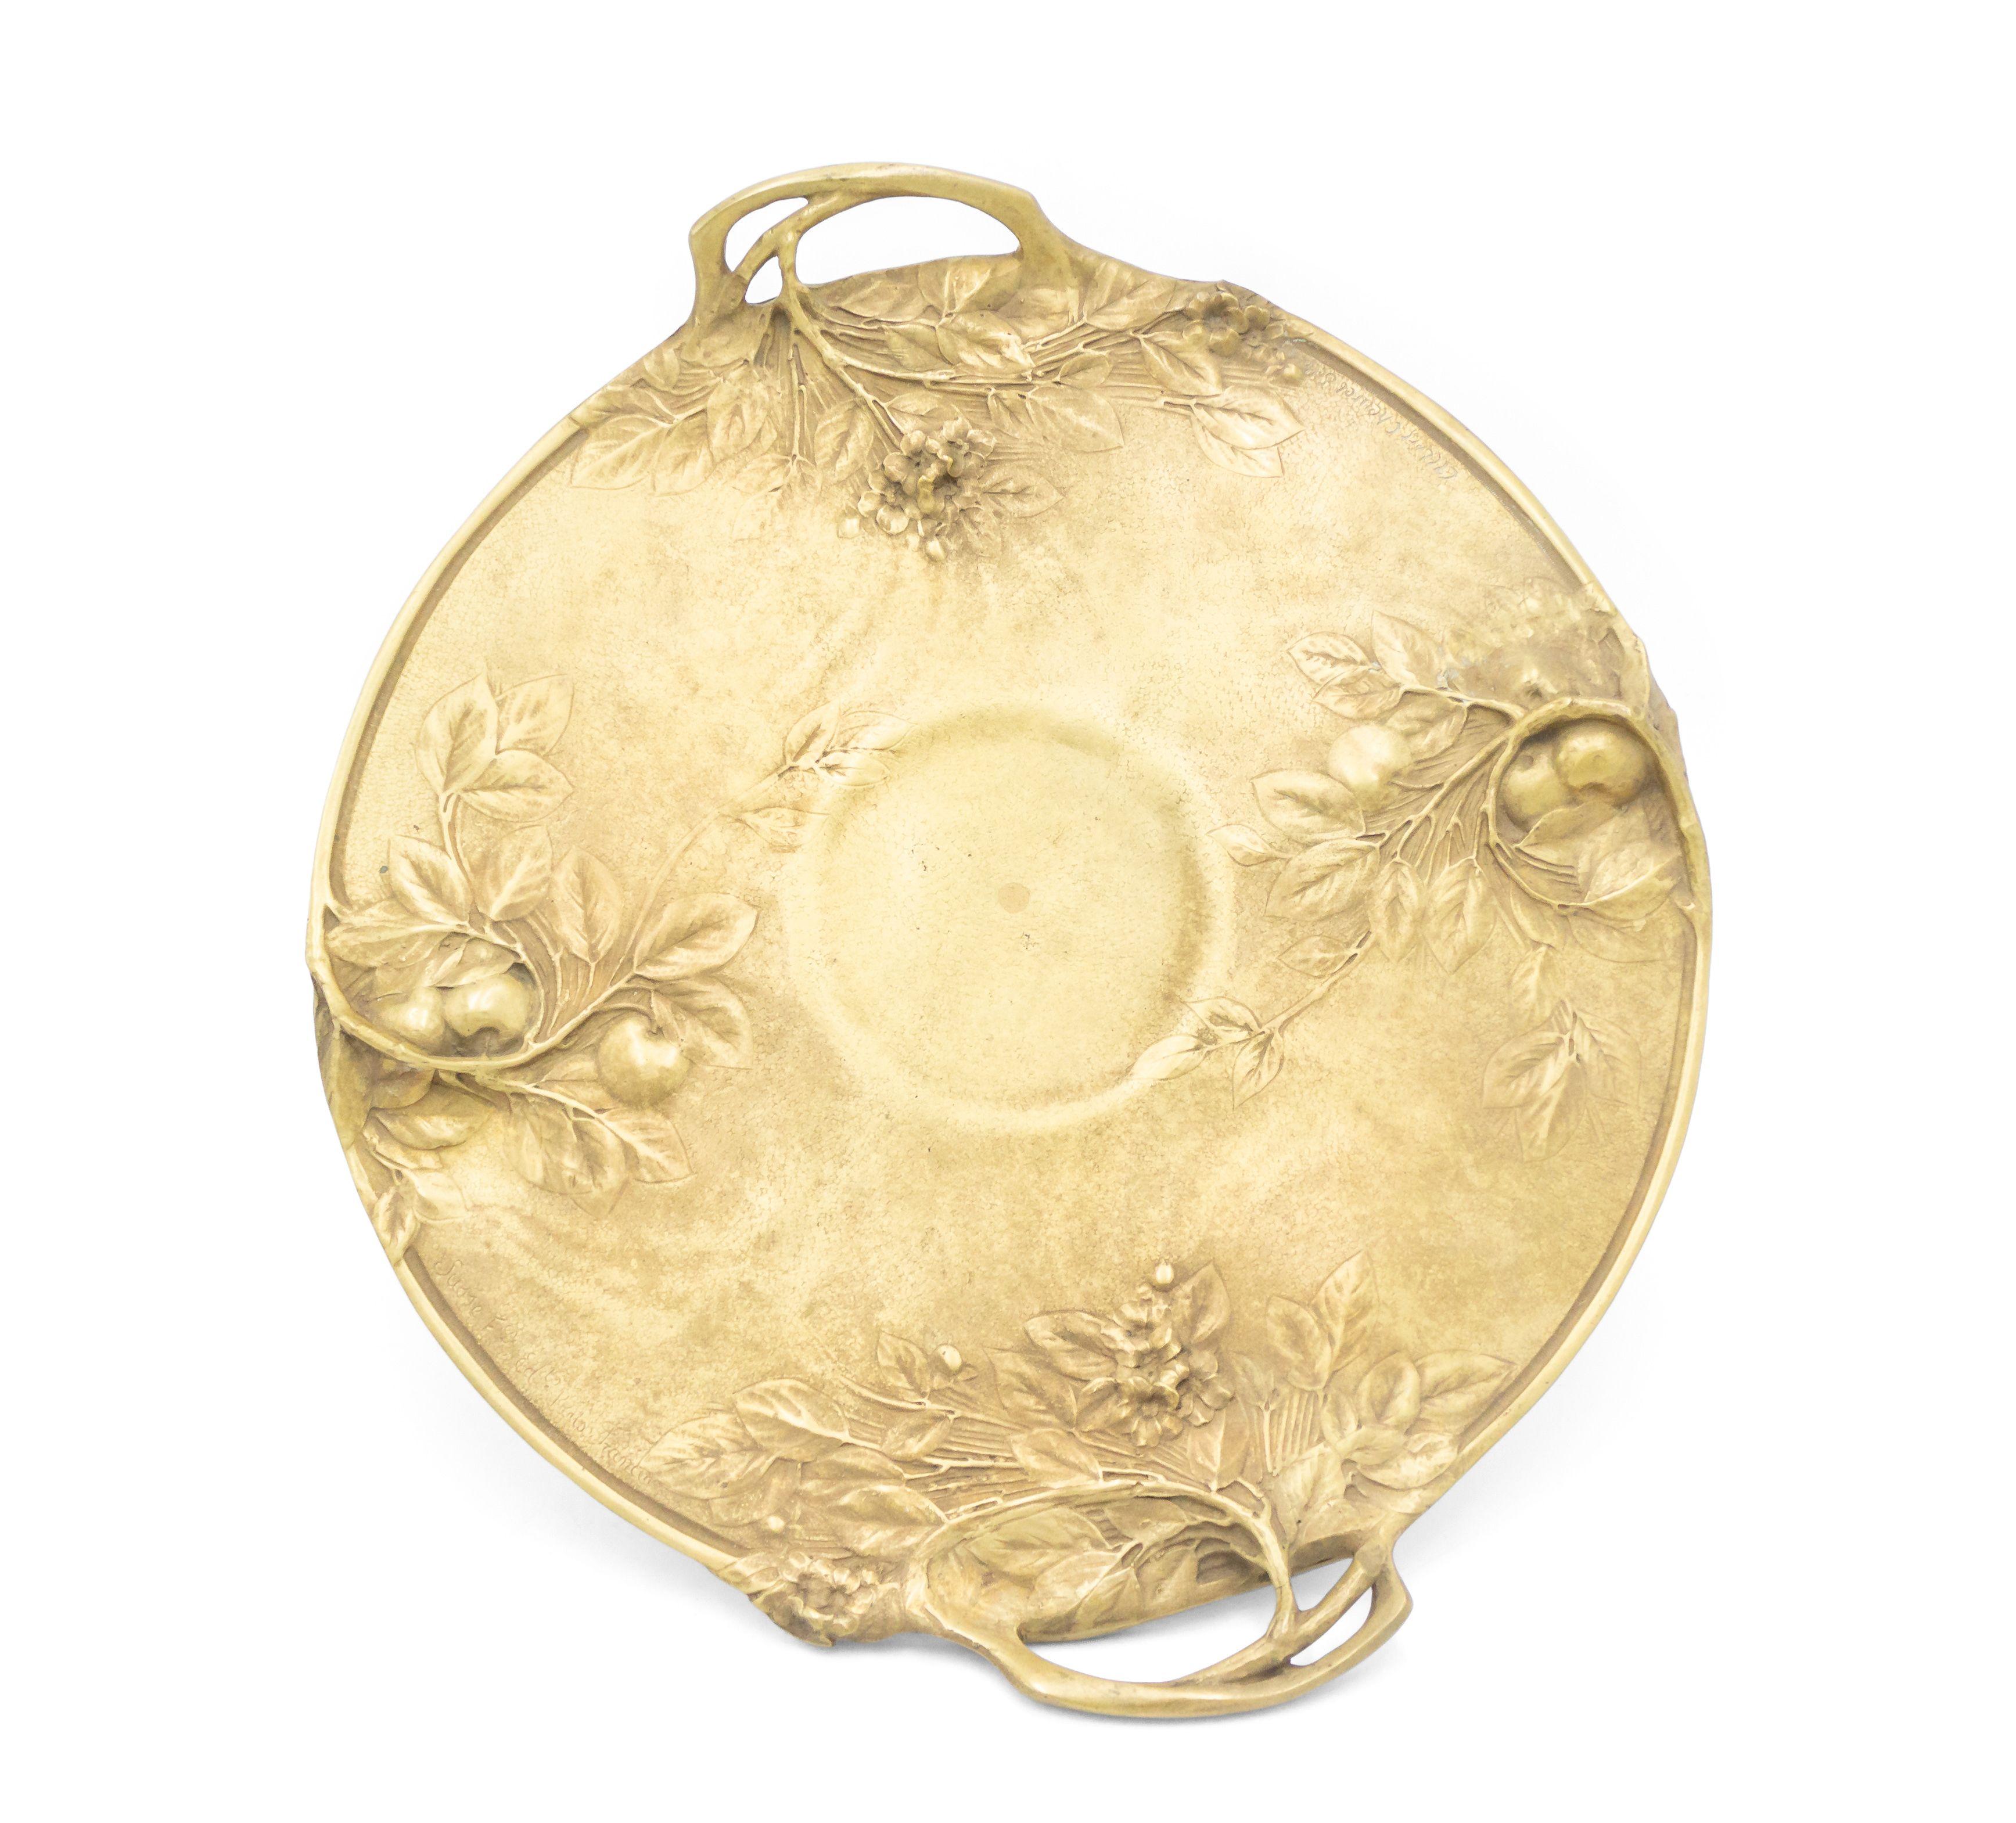 Compote ronde en bronze doré de style Art Nouveau français, avec des poignées à motifs de brindilles et un relief floral sur une base de piédestal (signée ALBERT CHEUREL SILOS).